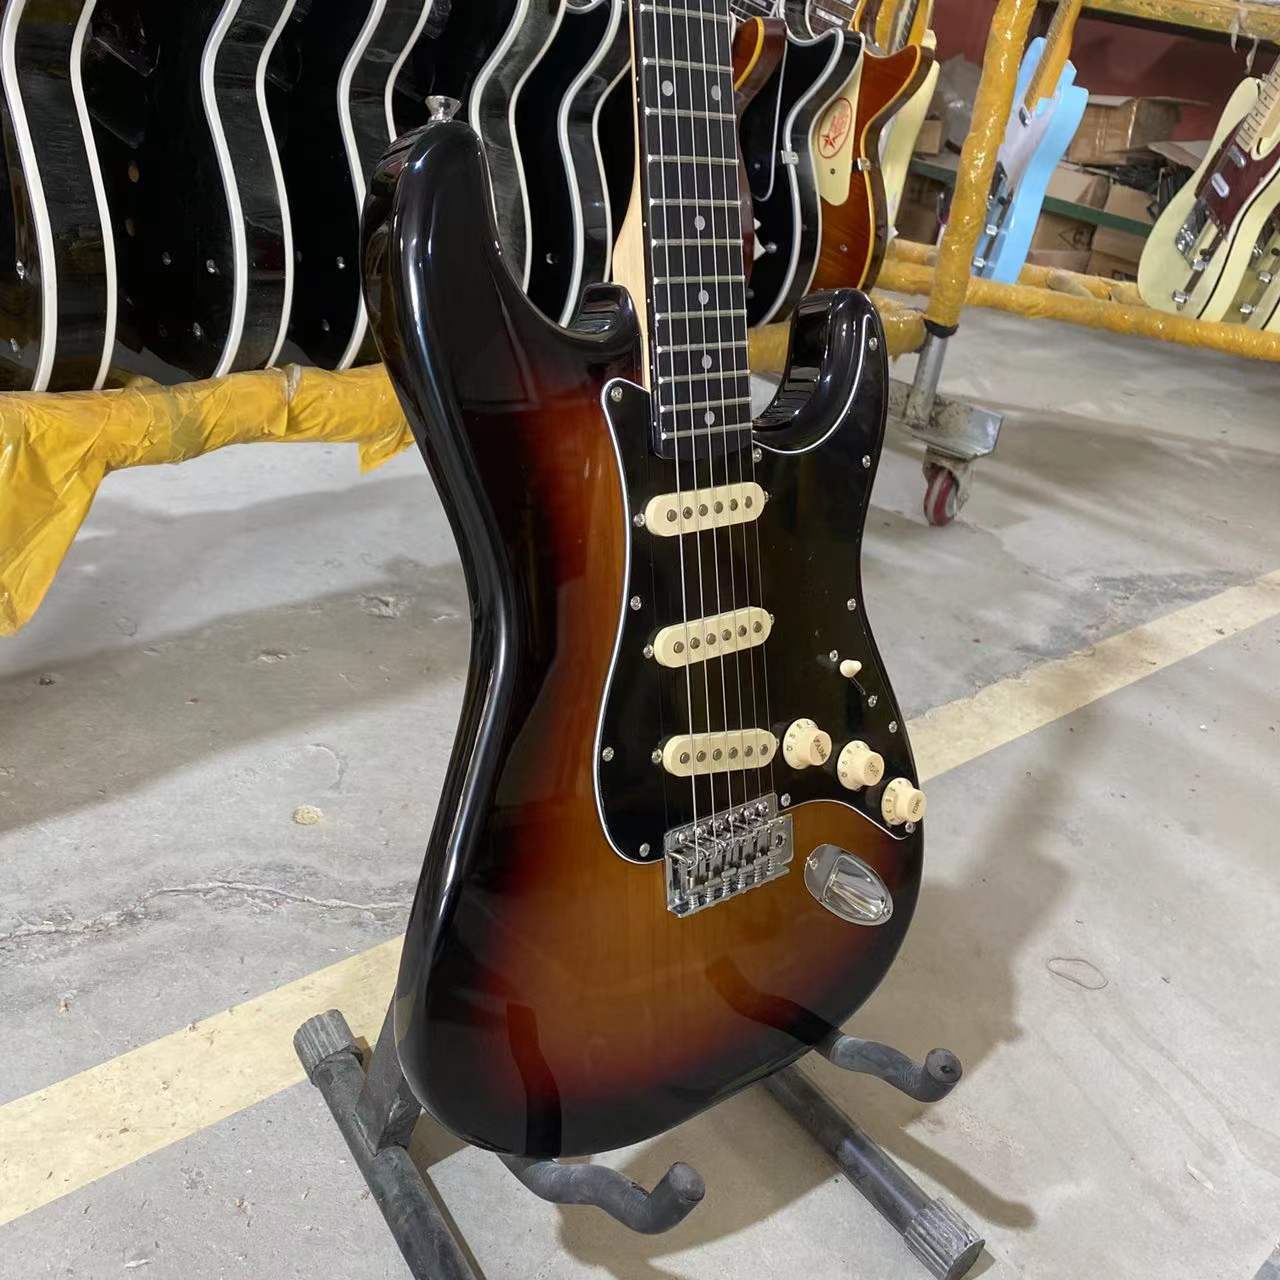 ST версия электрическая винтажная гитара цвета Sunburst Elder Wood Body черная накладка хромированная фурнитура высокое качество гитара Бесплатная доставка